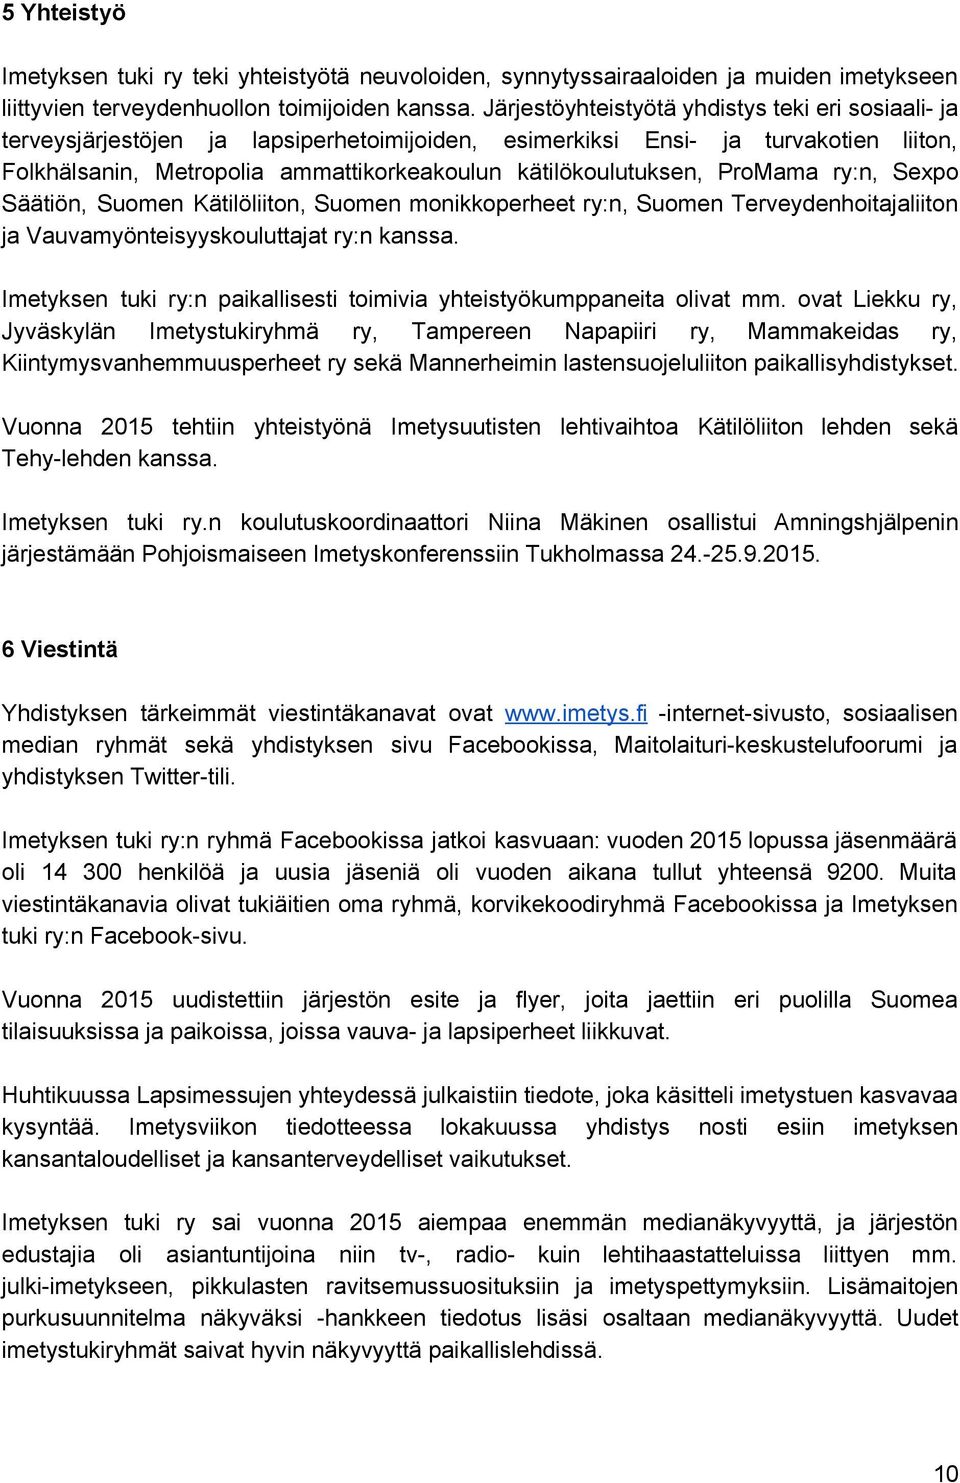 ProMama ry:n, Sexpo Säätiön, Suomen Kätilöliiton, Suomen monikkoperheet ry:n, Suomen Terveydenhoitajaliiton ja Vauvamyönteisyyskouluttajat ry:n kanssa.